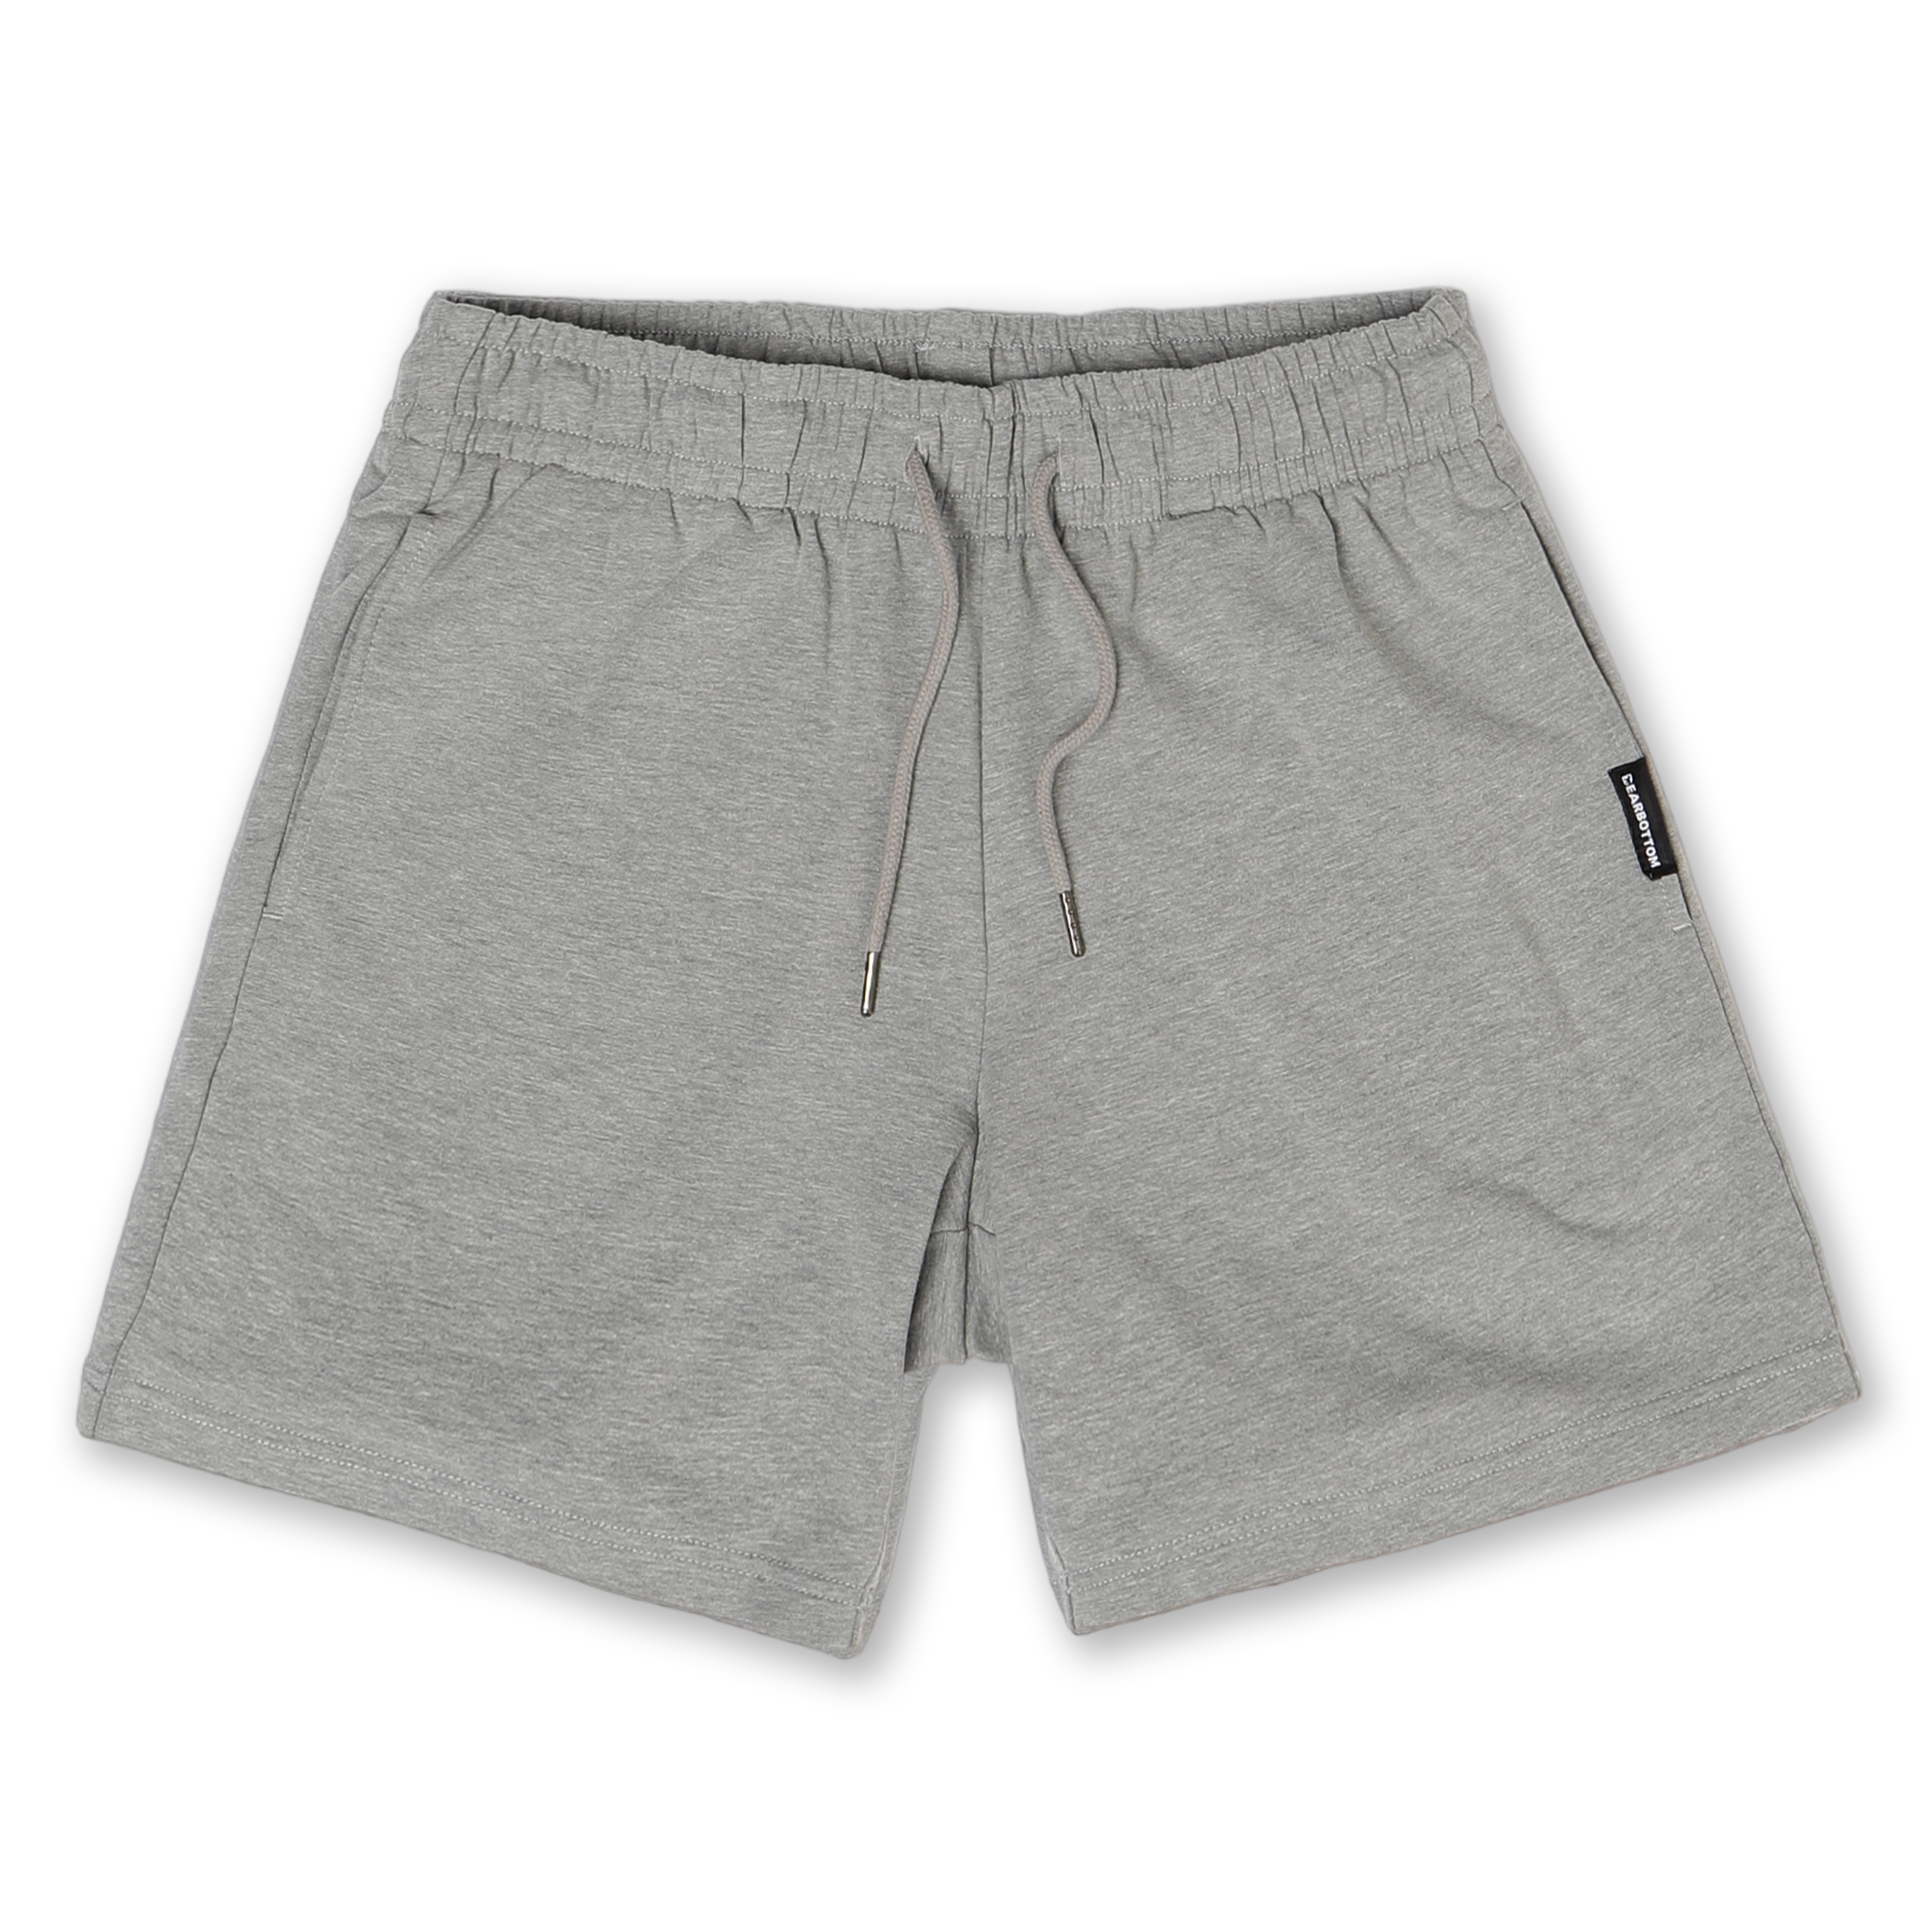 Cotton Shorts / Half pants for Men - Deep Black